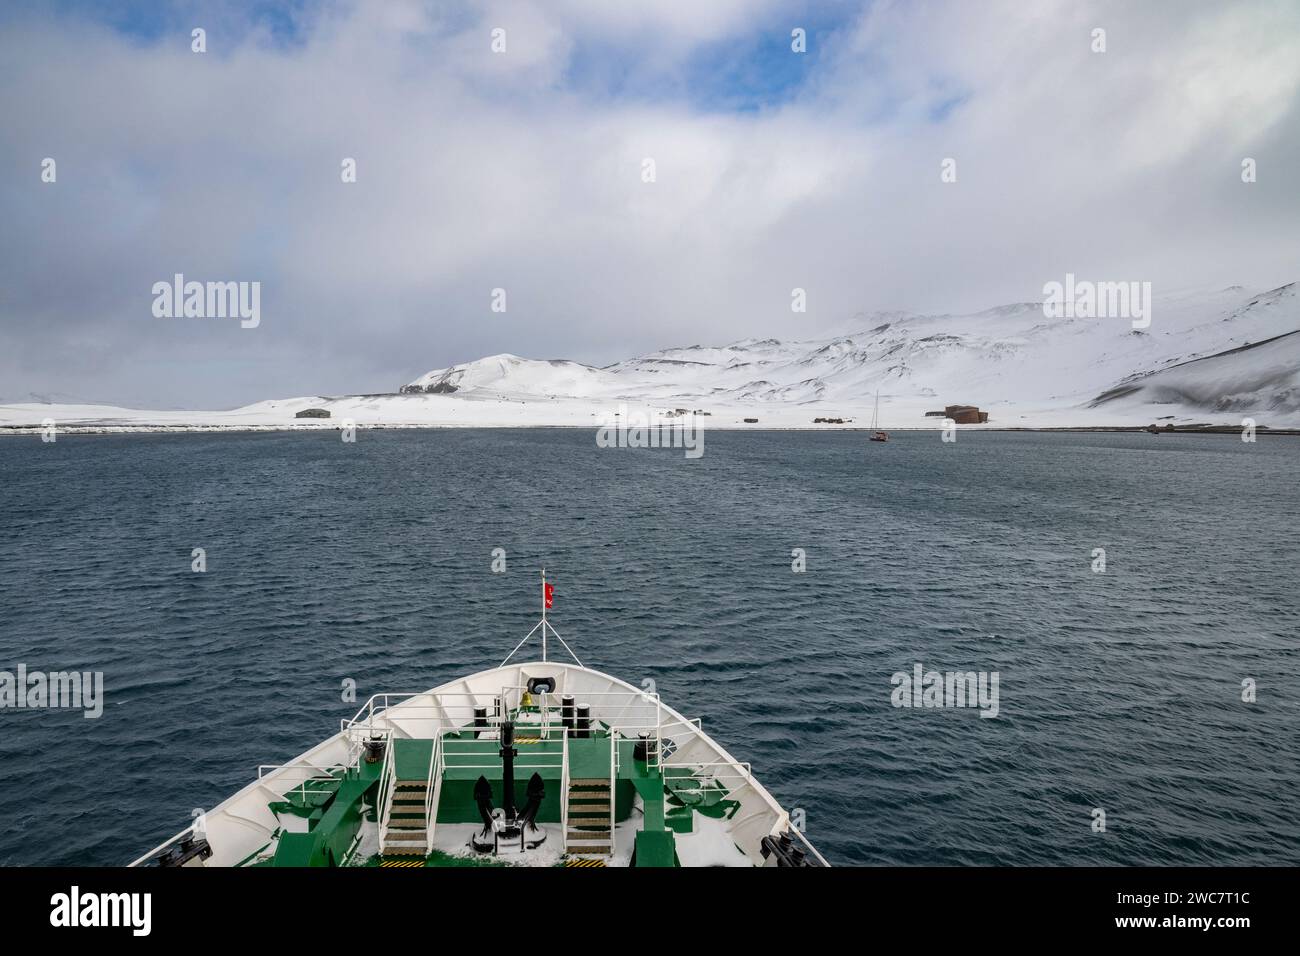 Isola dell'inganno, Isole Shetland meridionali, porto naturale sicuro, nella caldera di un vulcano attivo, rovine di una stazione di caccia alle balene, navig di navi da spedizione Foto Stock